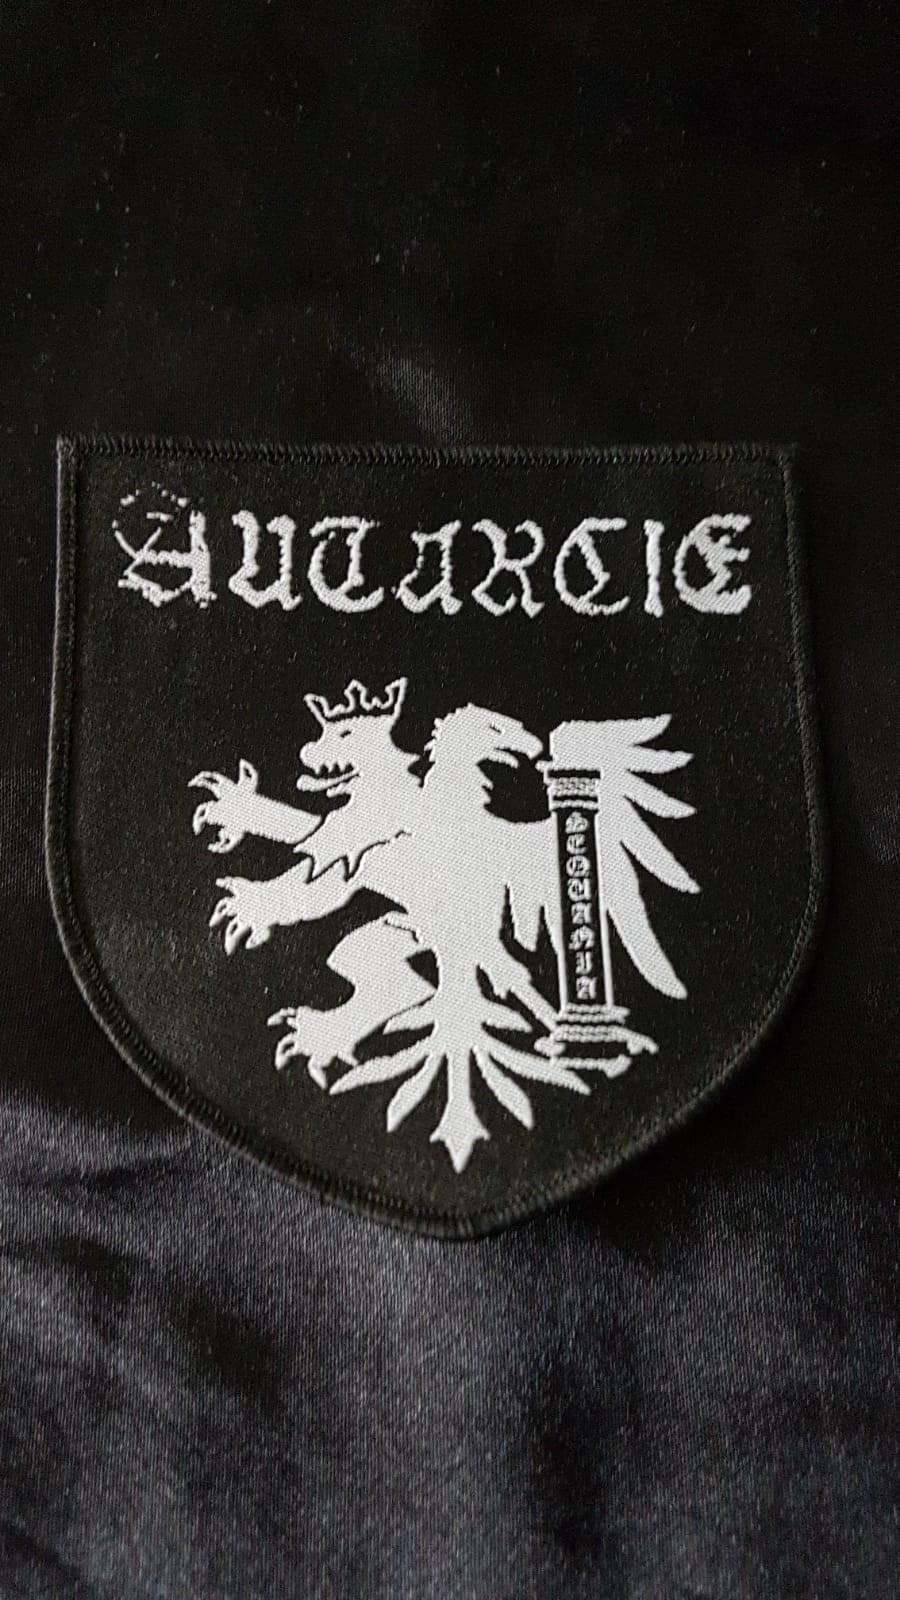 AUTARCIE - Wappen Patch